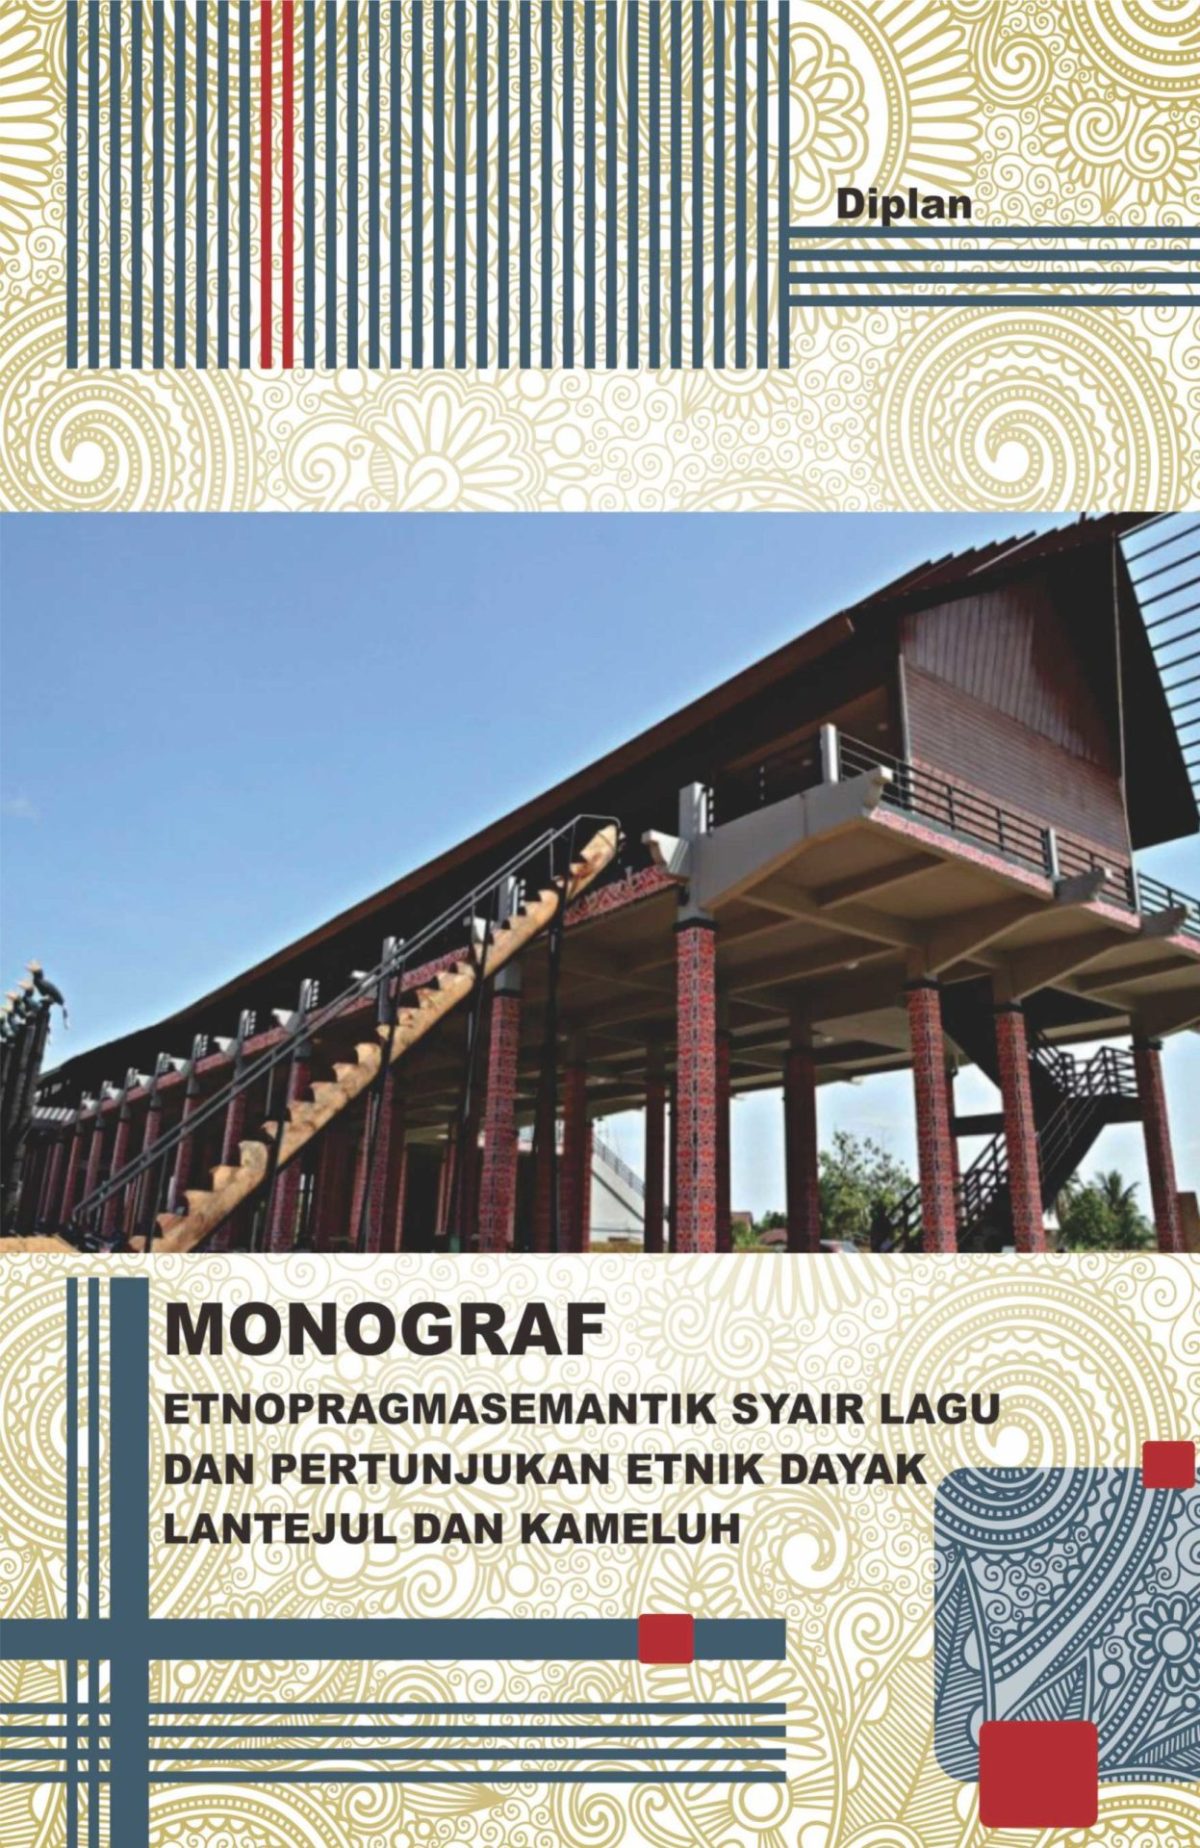 Monograf Etnopragmasemantik Syair Lagu dan Pertunjukan Etnik Dayak Lantejul dan Kameluh